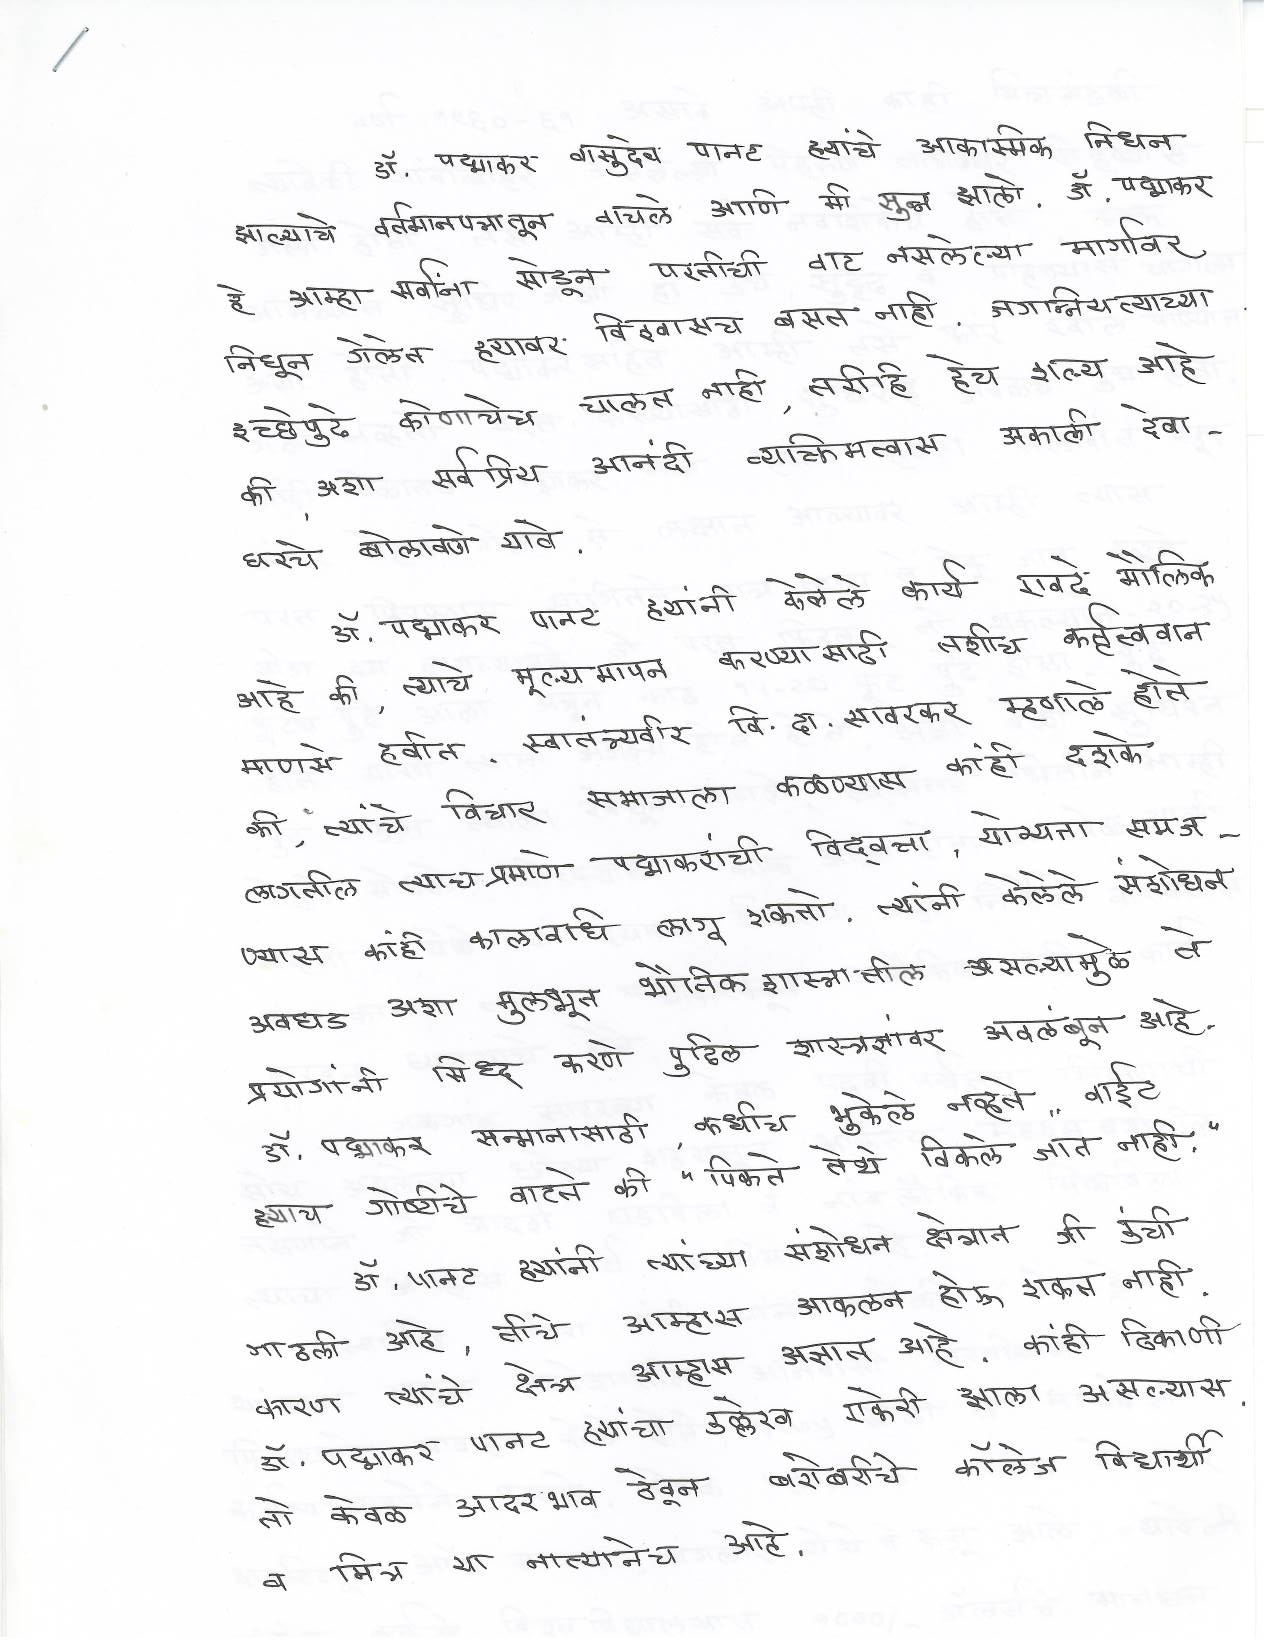 SL Kulkarni on PV Panat (Page 1)